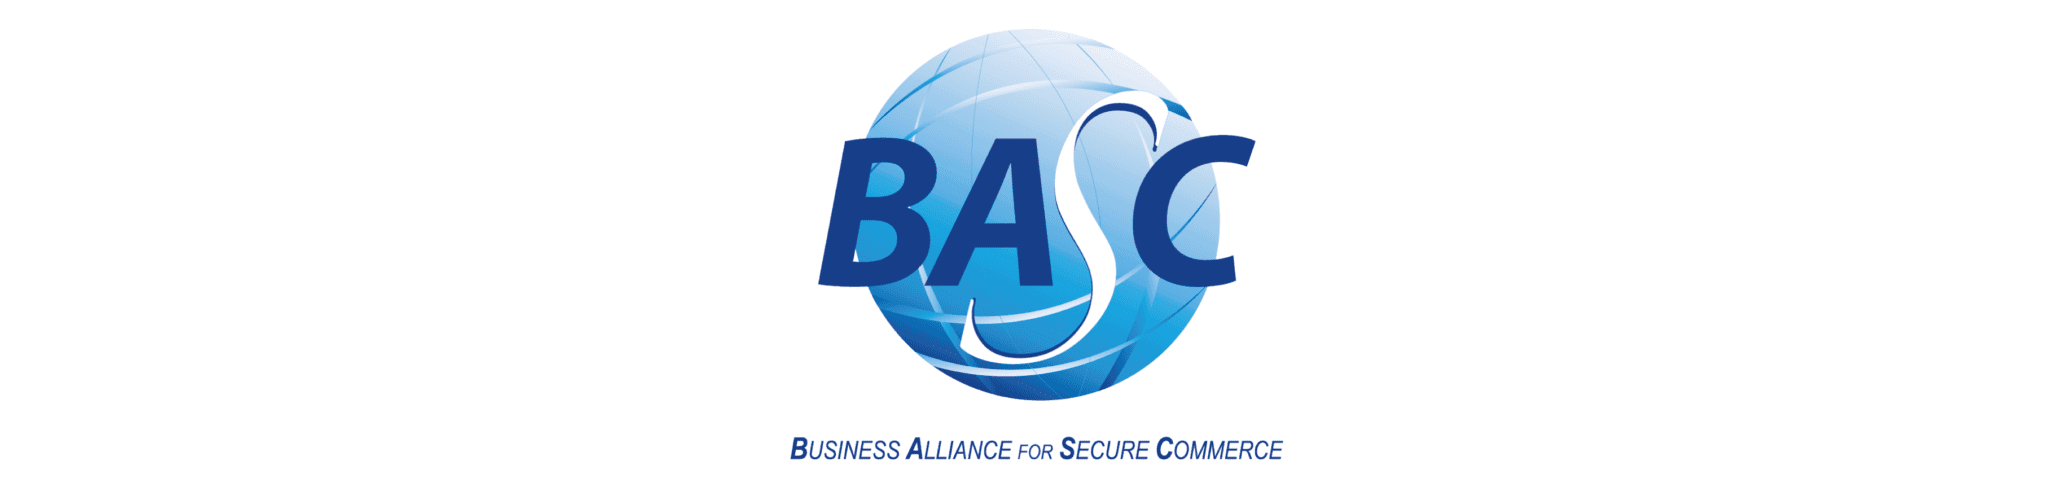 Basc_Base logos pagina web_Mesa de trabajo 1